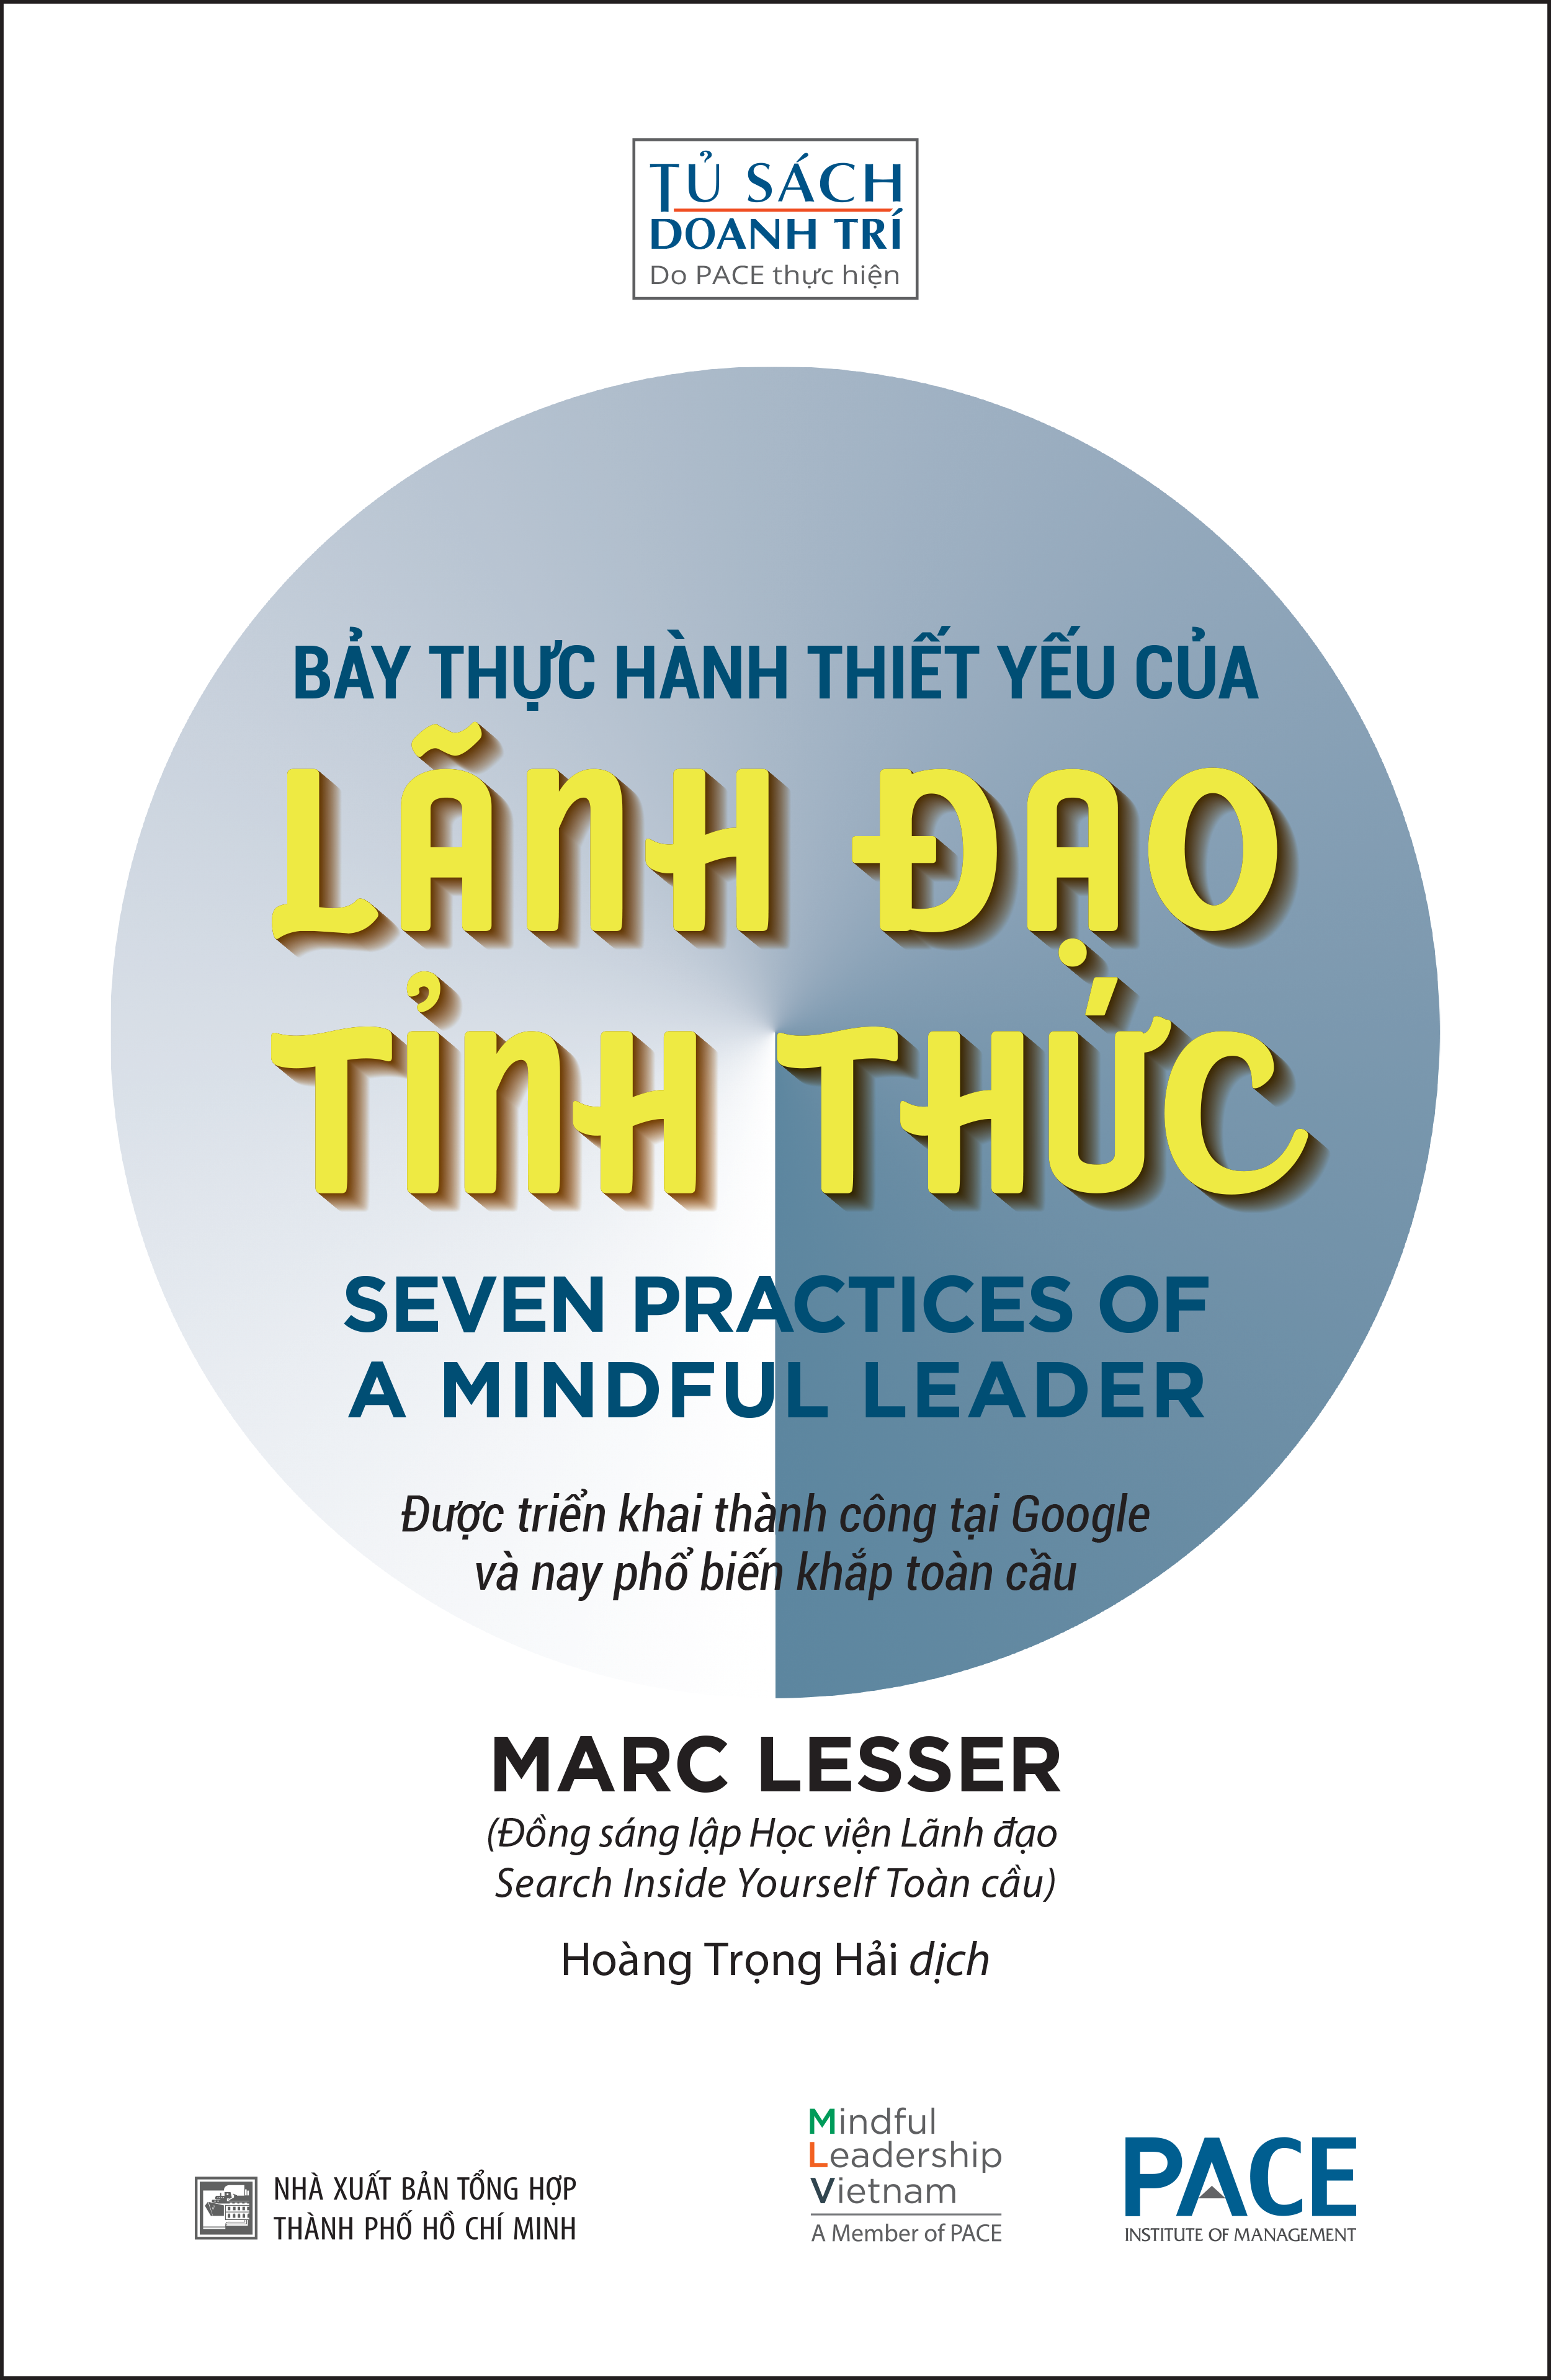 Sách PACE Books - Bảy thực hành thiết yếu của lãnh đạo tỉnh thức (Seven practices of a mindful leader) - Marc Lesser